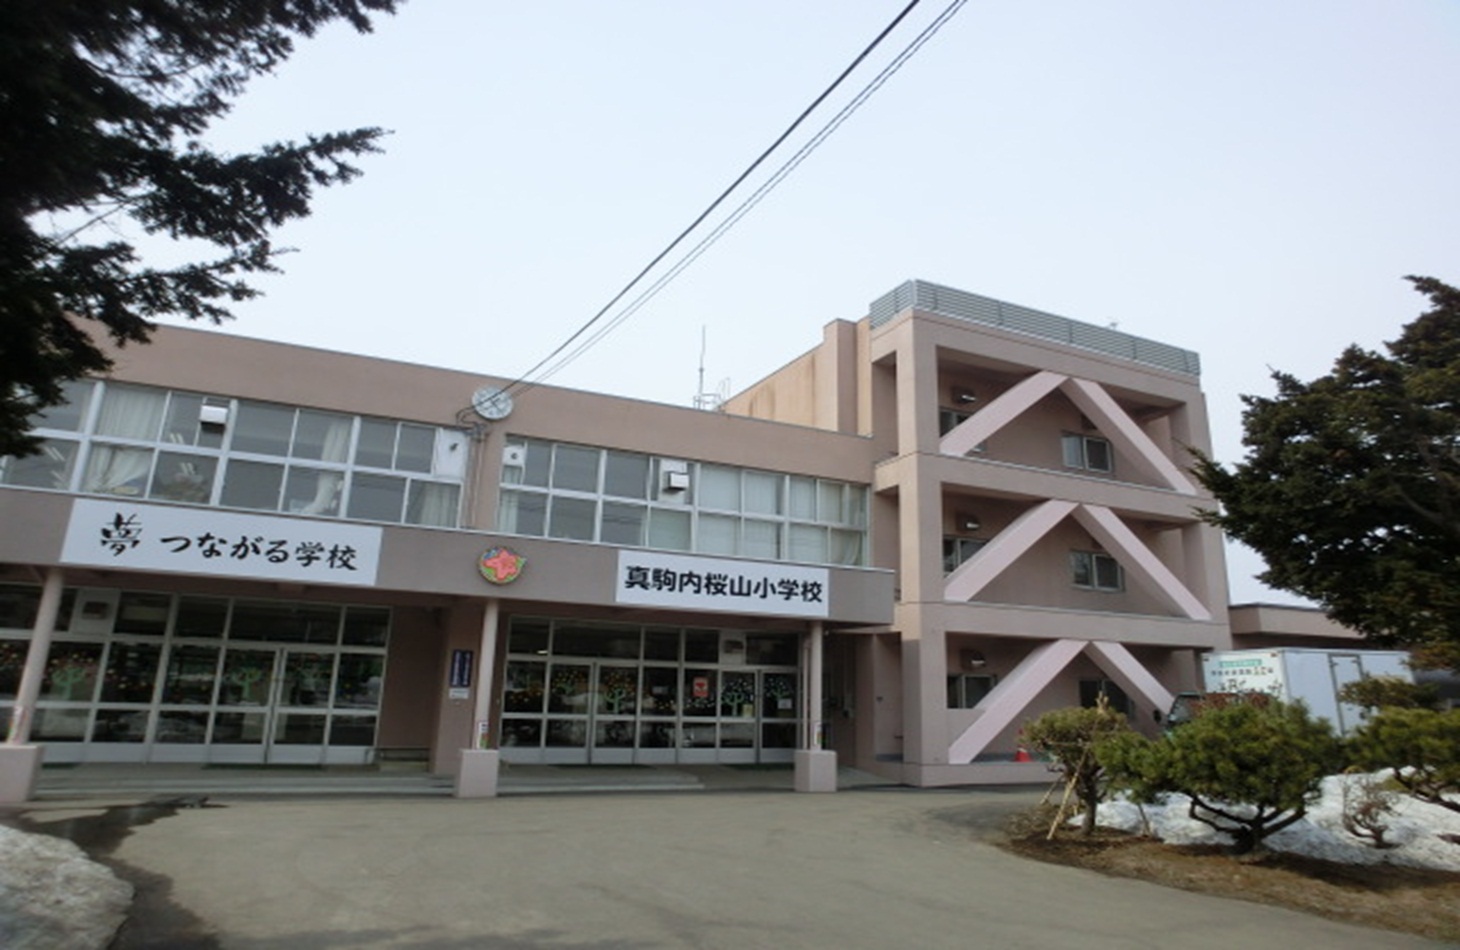 Primary school. 1723m to Sapporo Municipal Makomanai Sakurayama elementary school (elementary school)